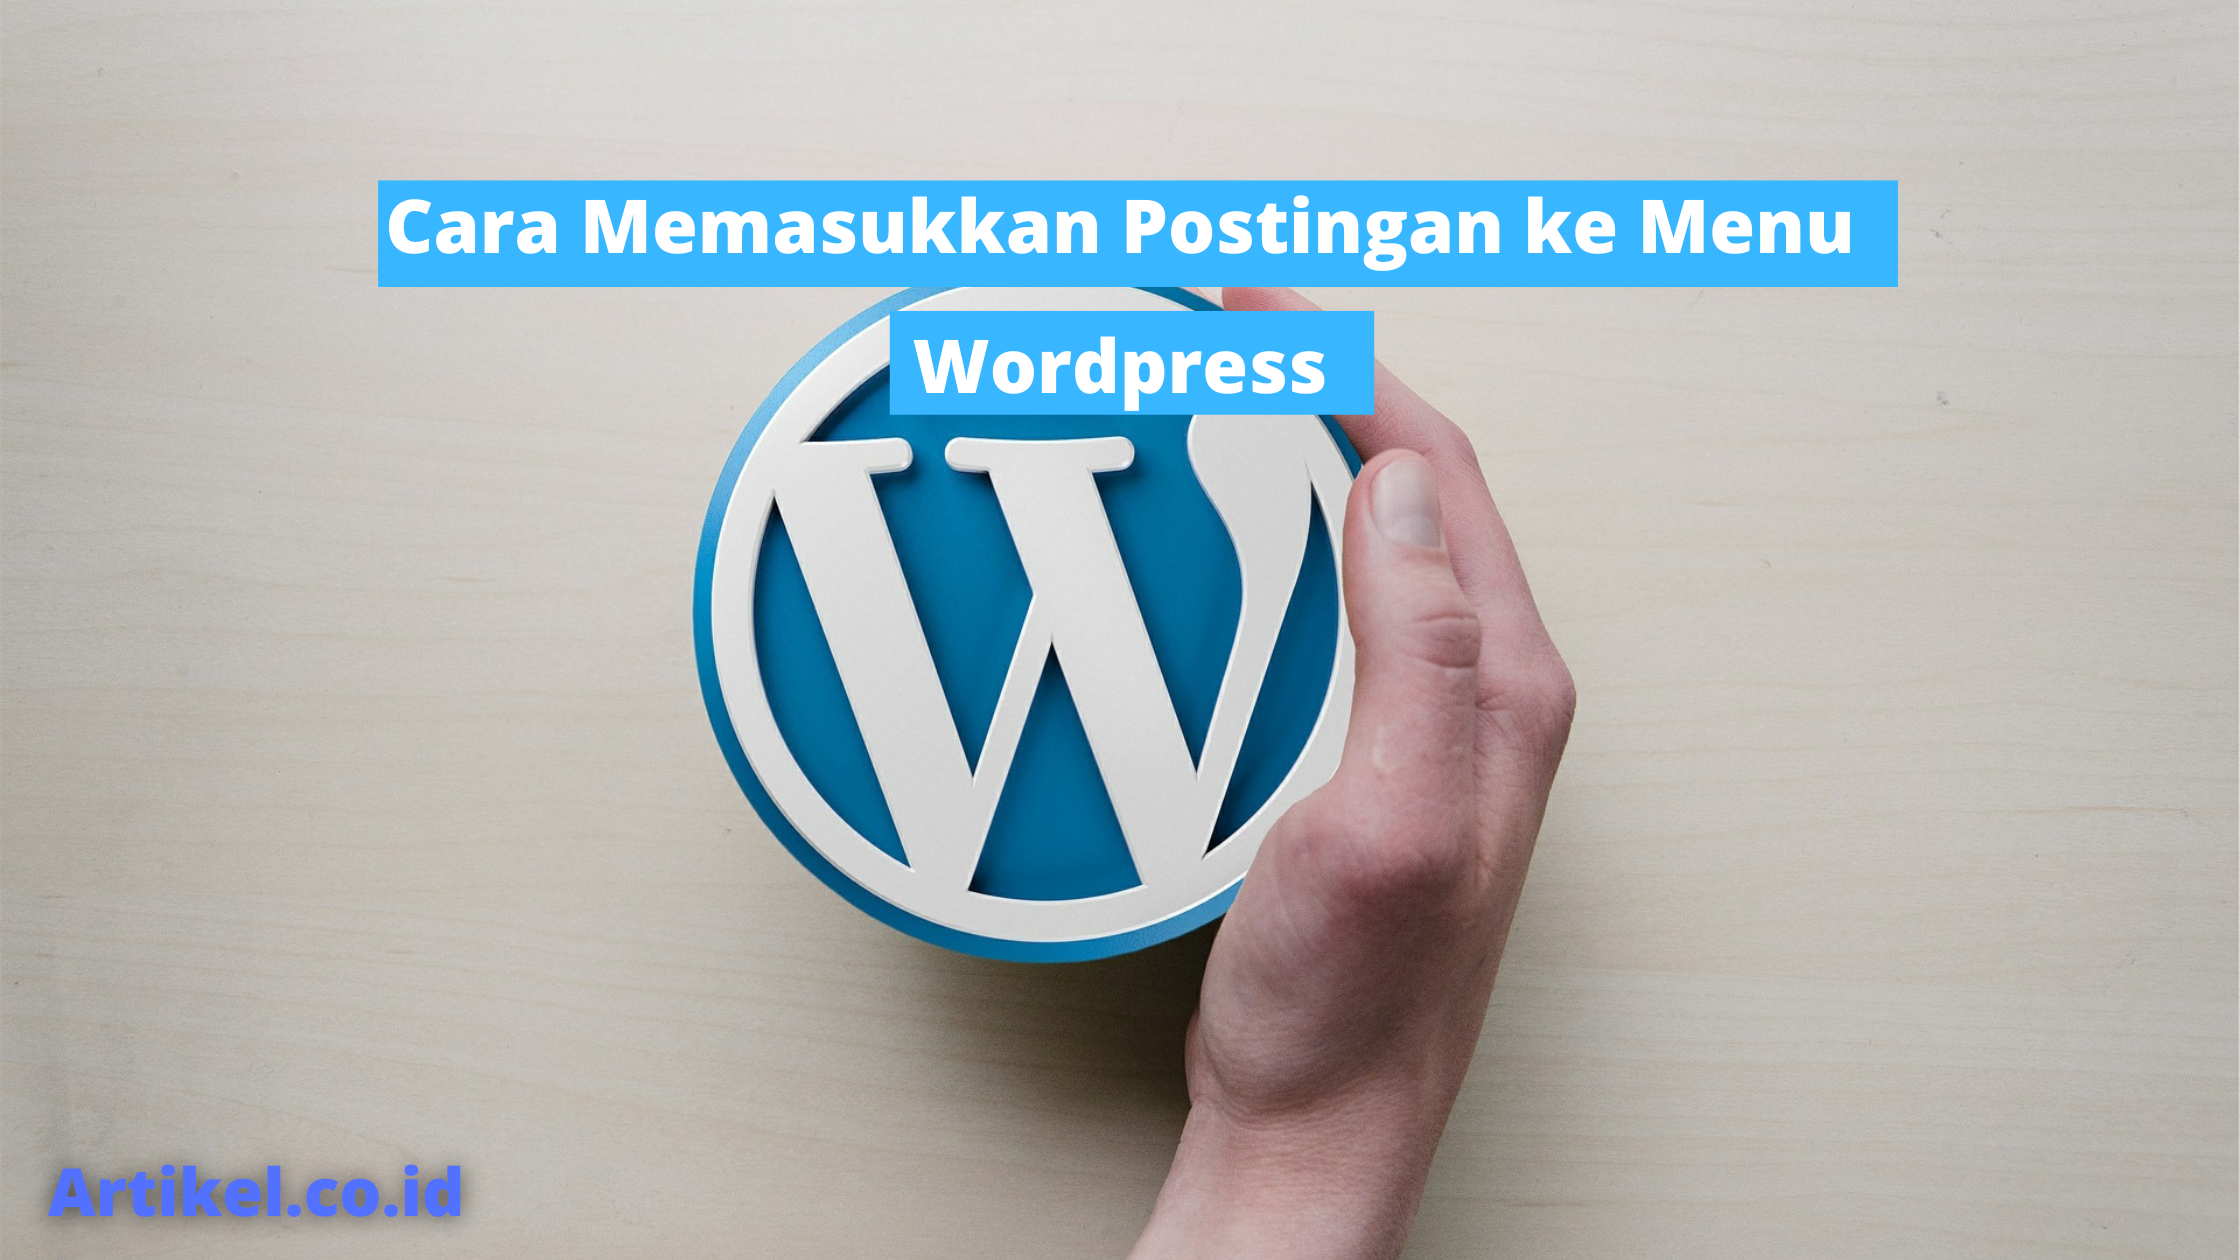 Cara Memasukkan Postingan ke Menu Wordpress